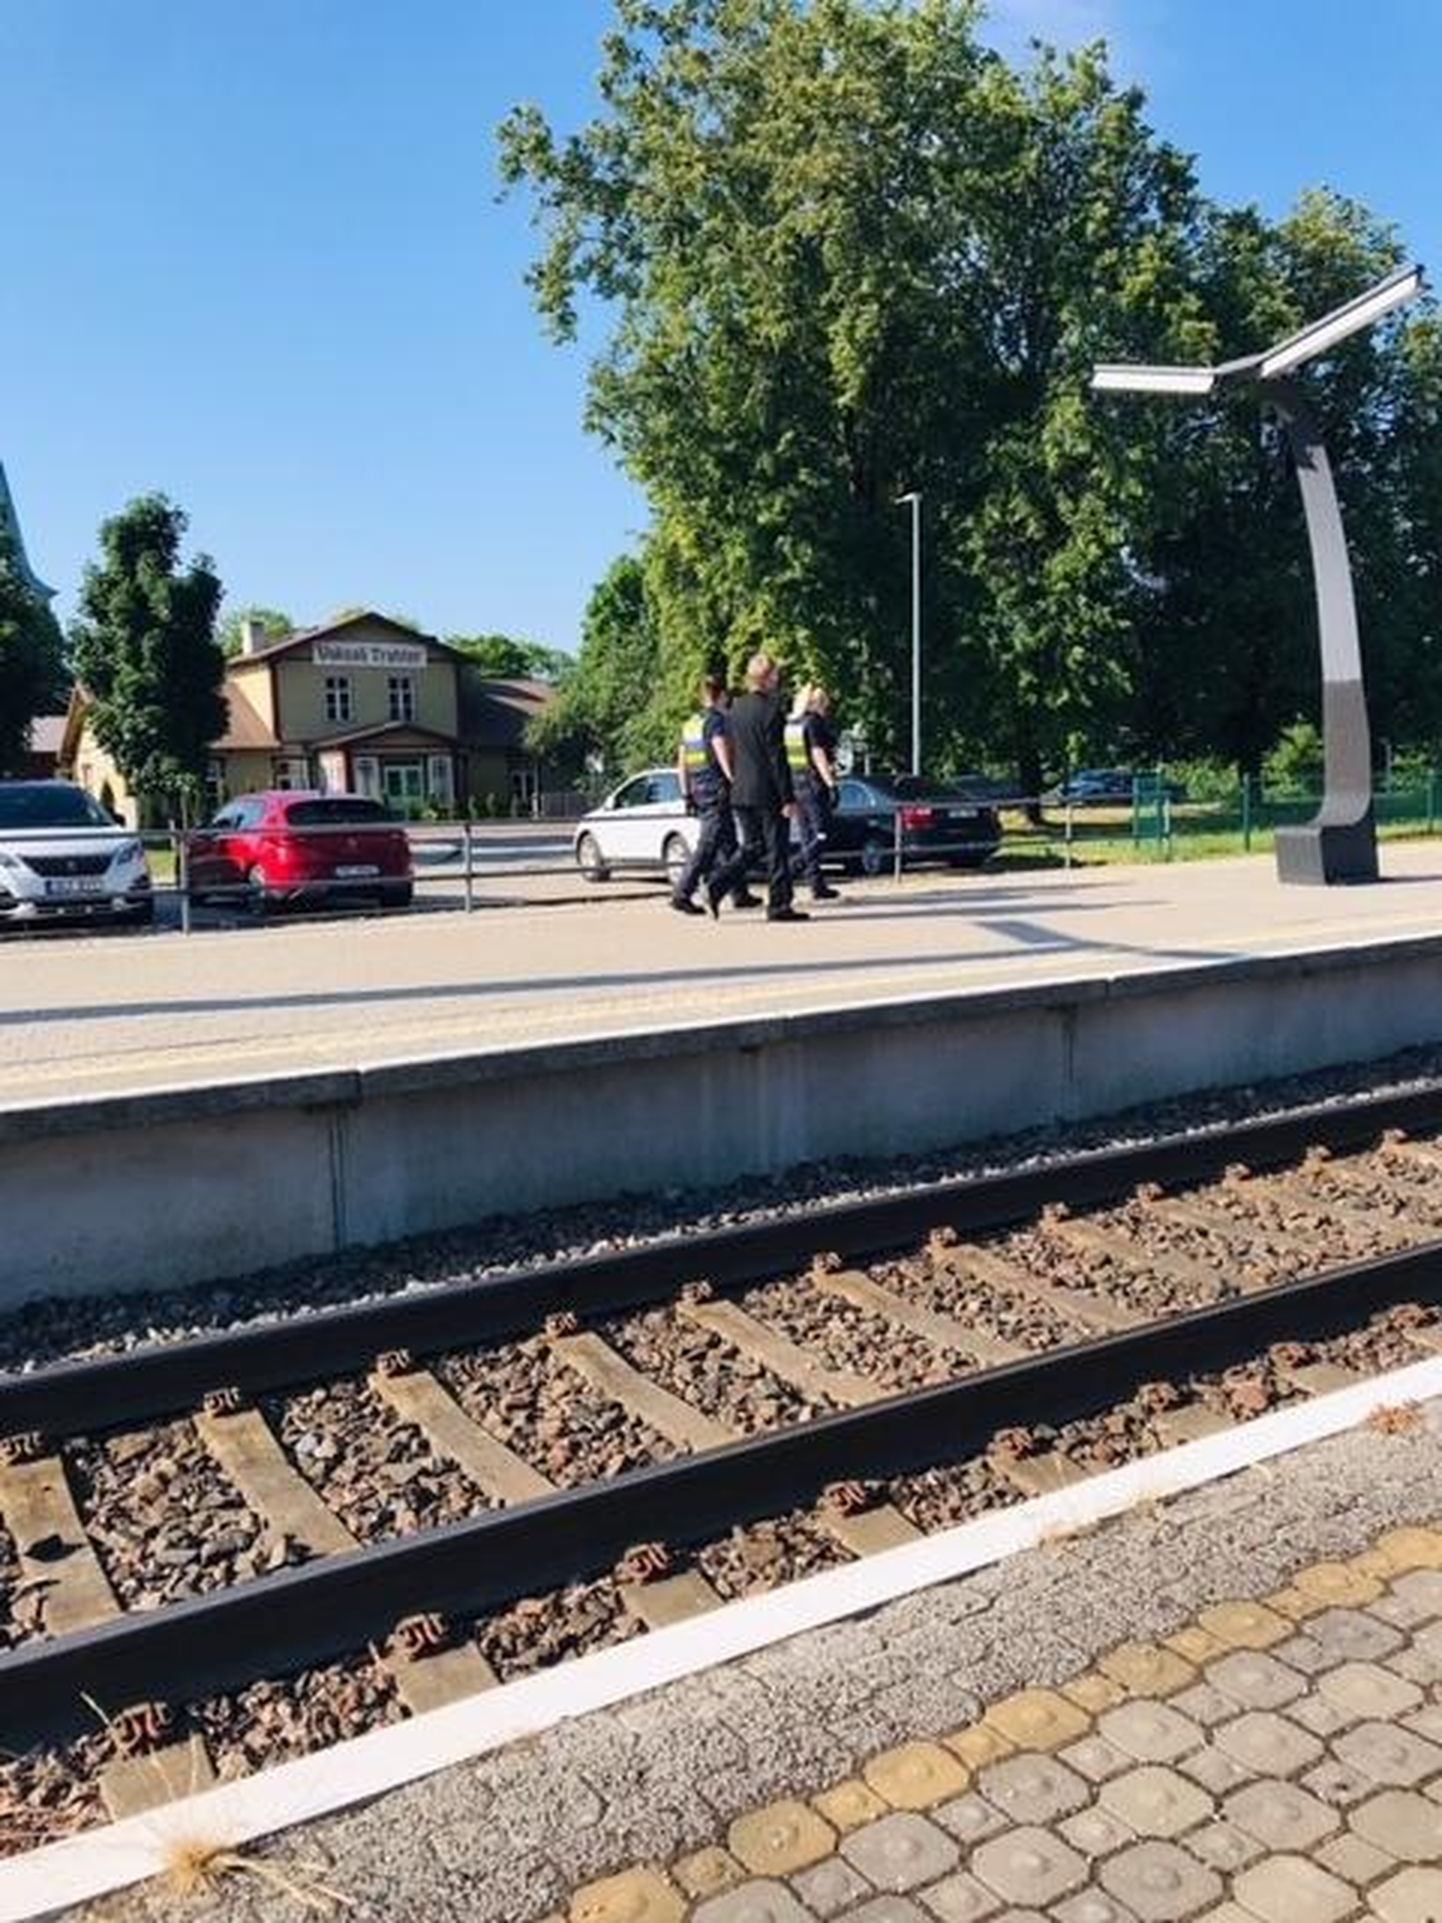 После беседы с полицейскими пассажир, устроивший ссору, добровольно сошел с поезда.